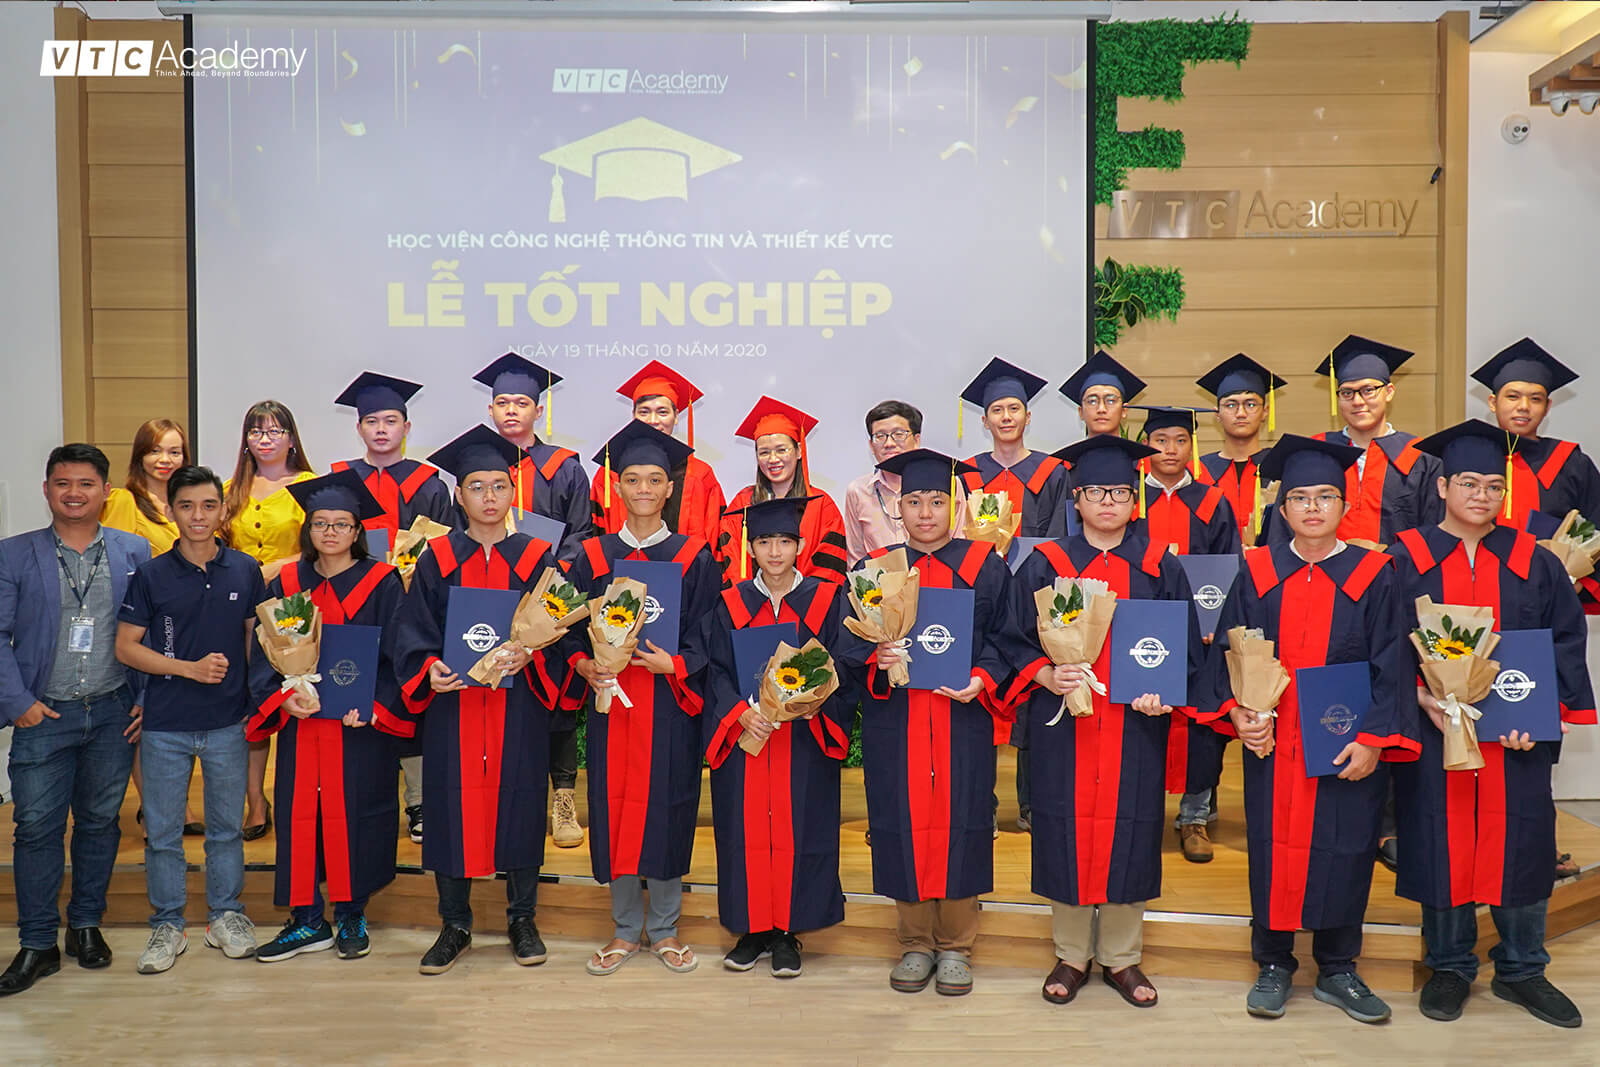 VTC Academy tổ chức lễ tốt nghiệp cho học viên tại TP.HCM